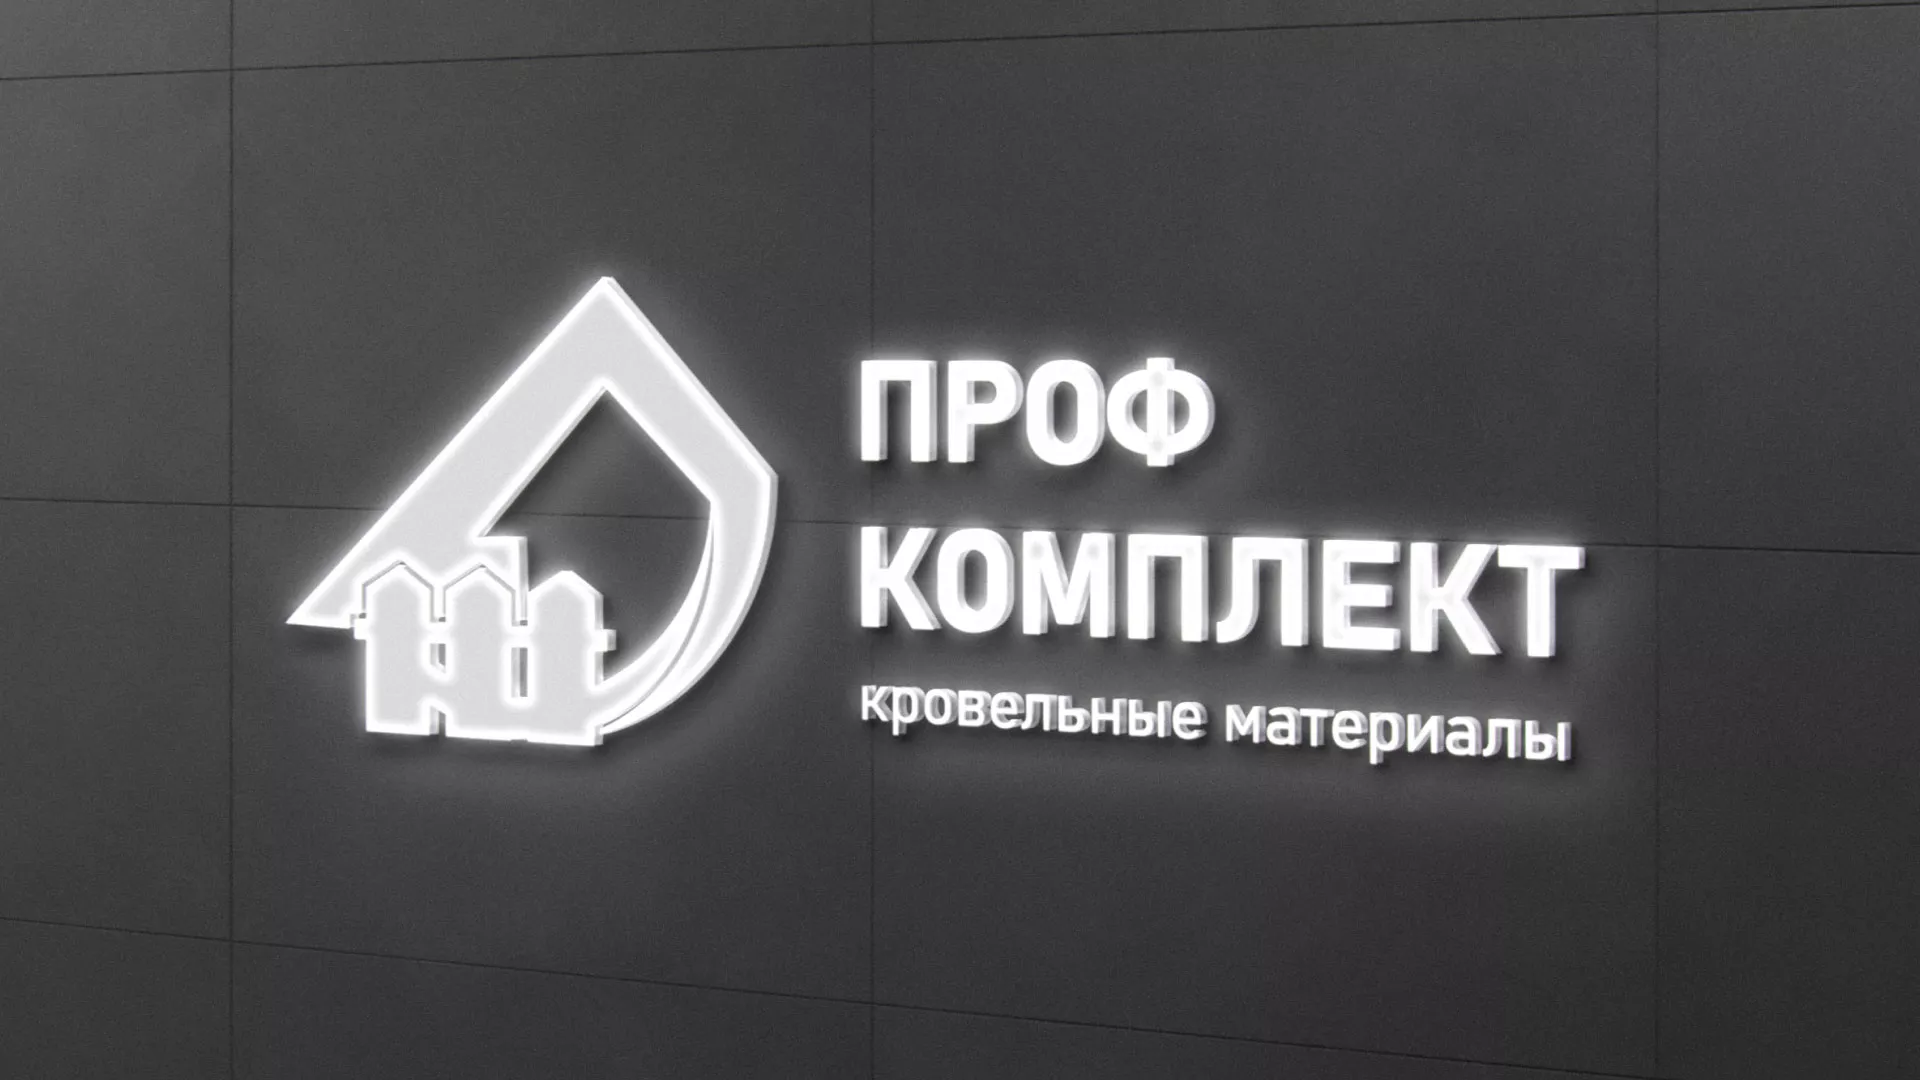 Разработка логотипа «Проф Комплект» в Соколе